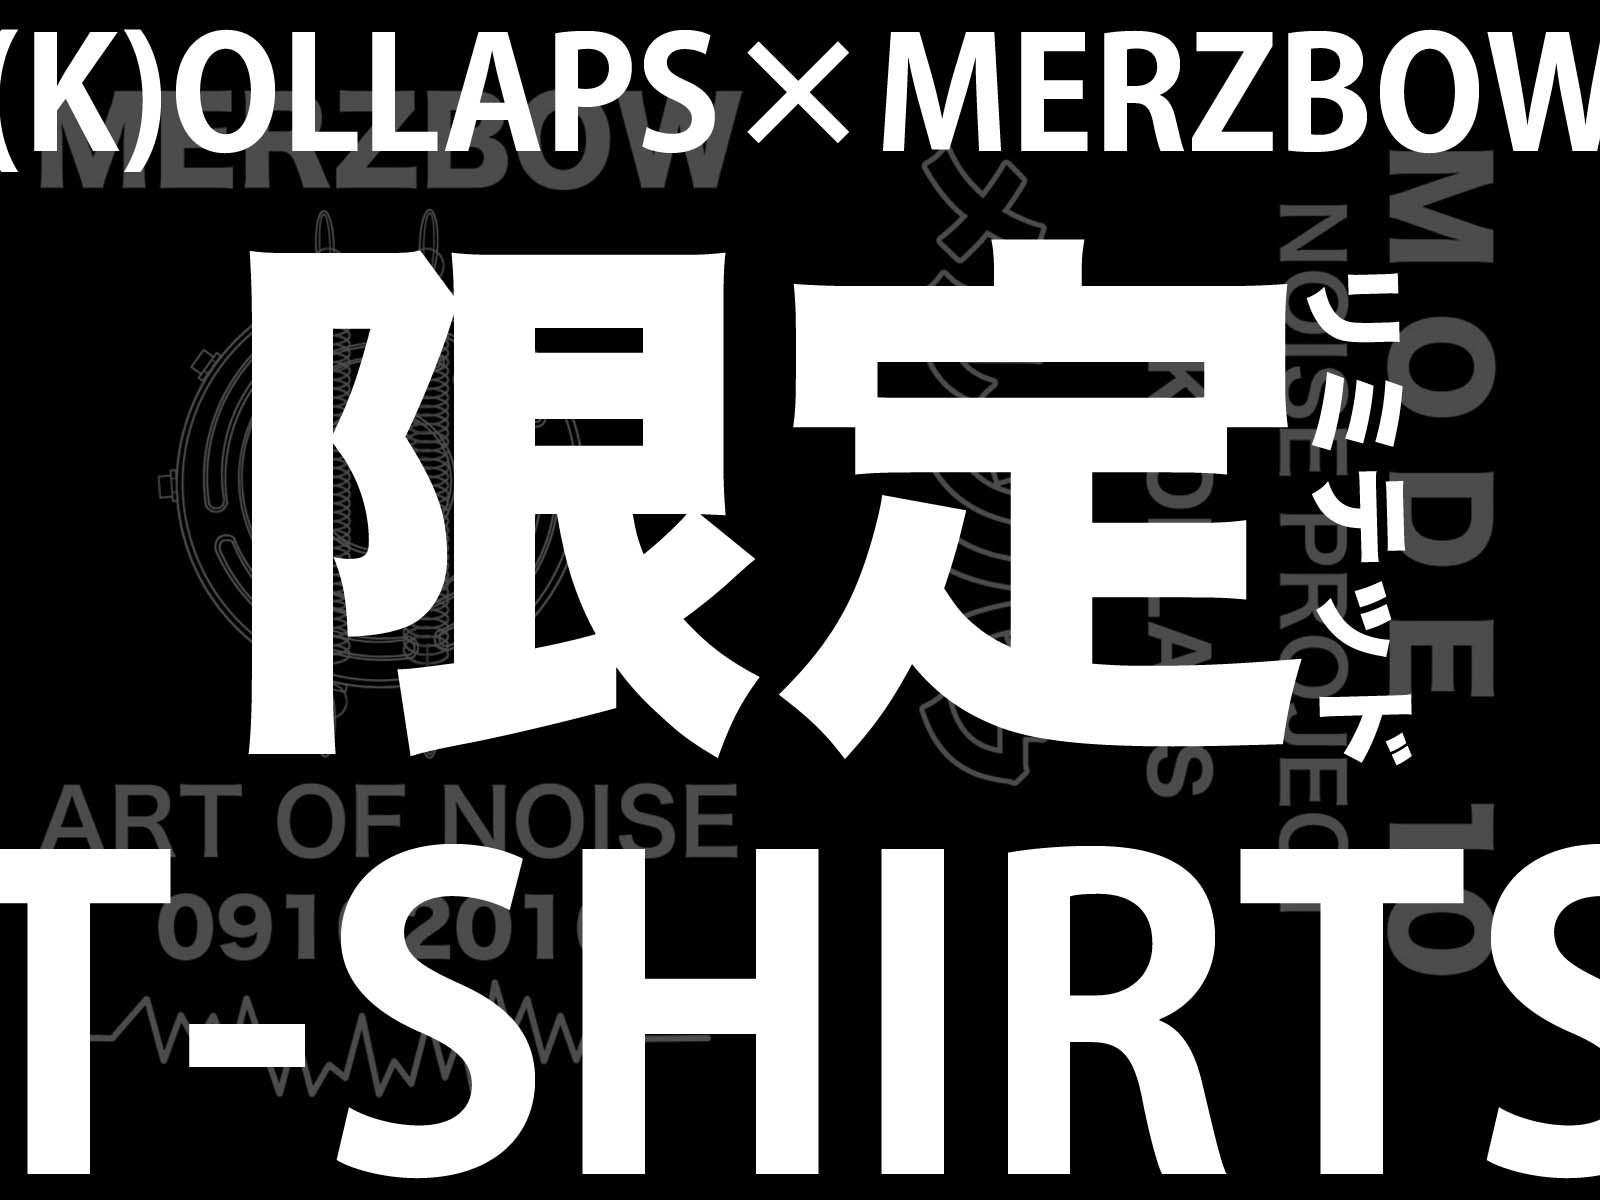 MERZBOW× (K)OLLAPS リミテッドエディション T-シャツ発売決定